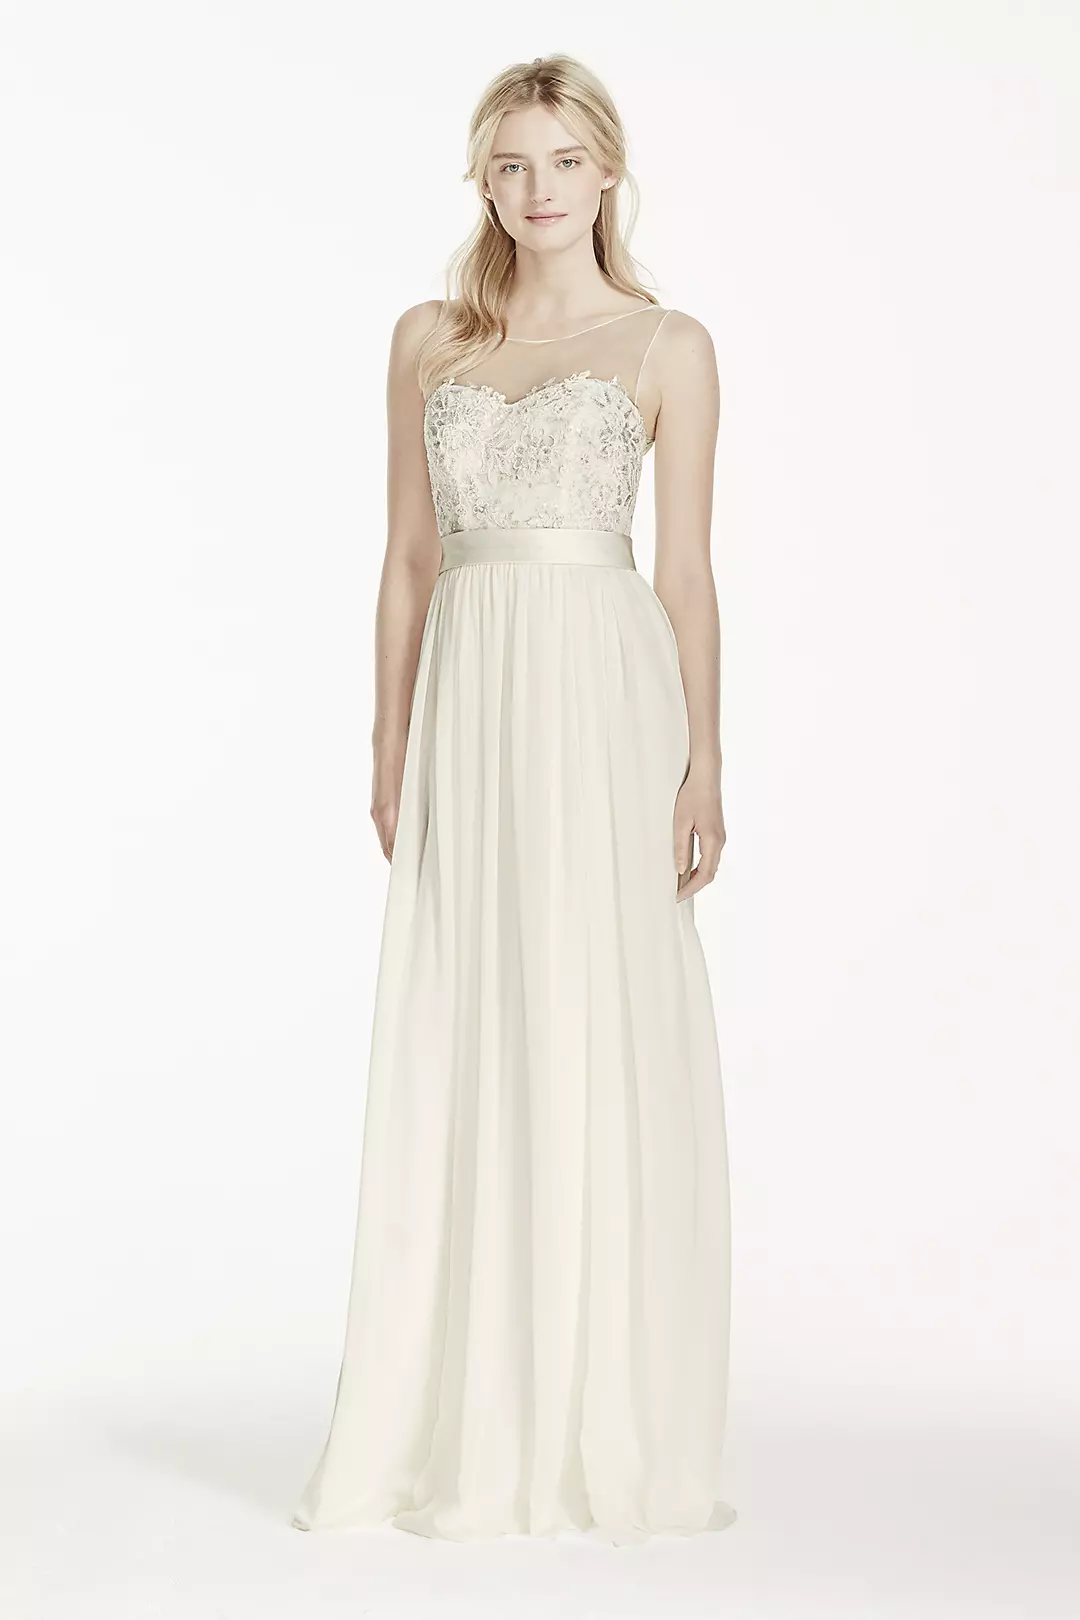 Illusion Lace Tank Chiffon Wedding Dress with Sash Image